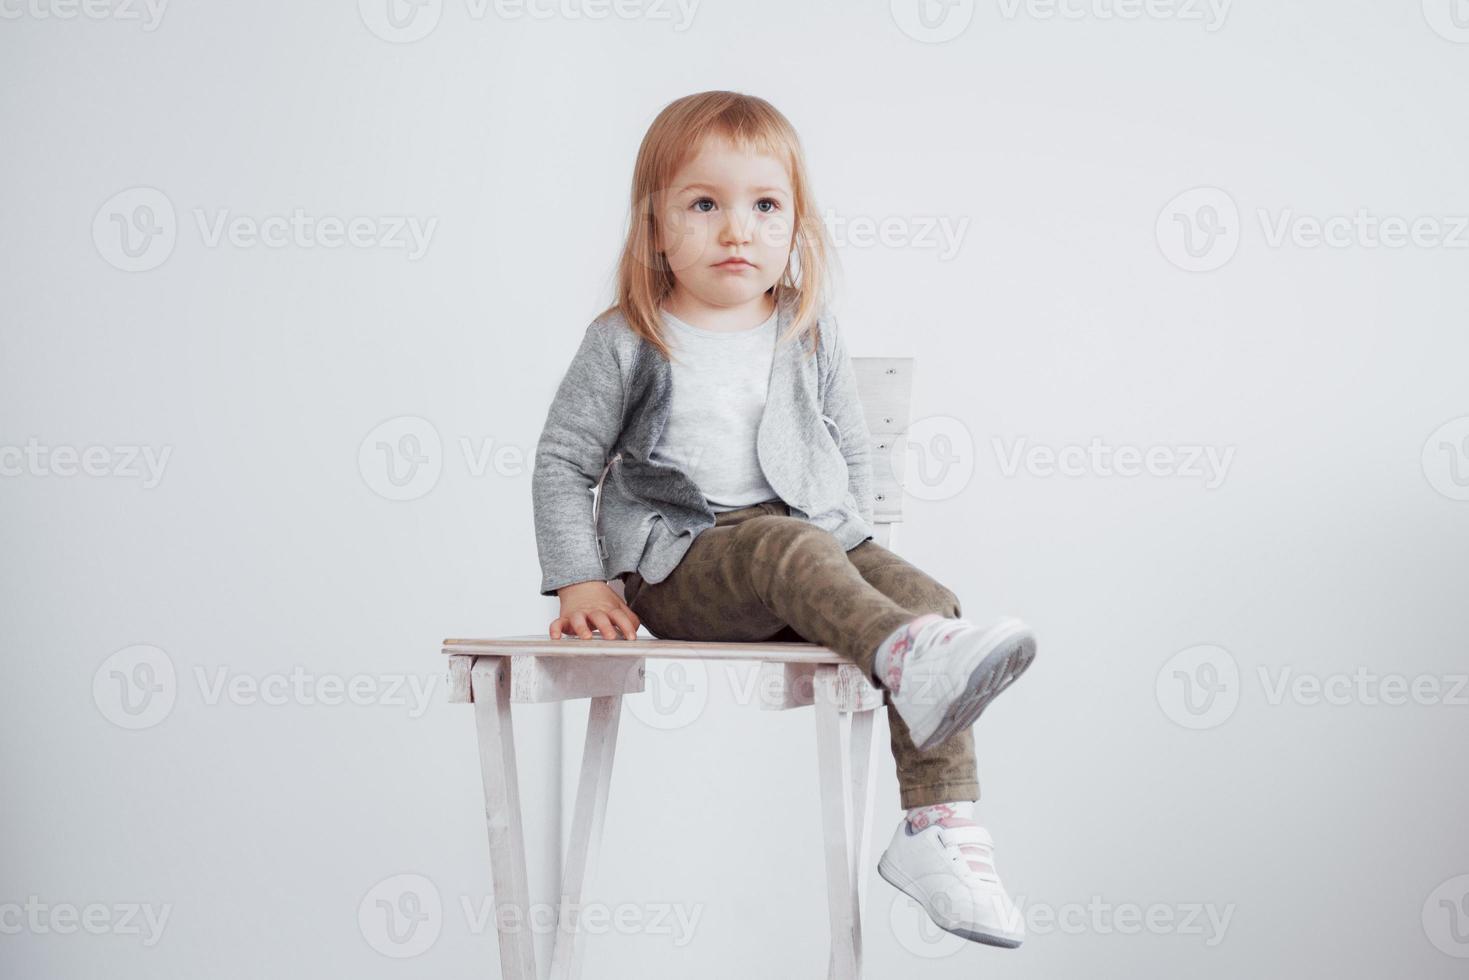 un jeune enfant, une petite fille assise sur un grand tabouret en riant photo